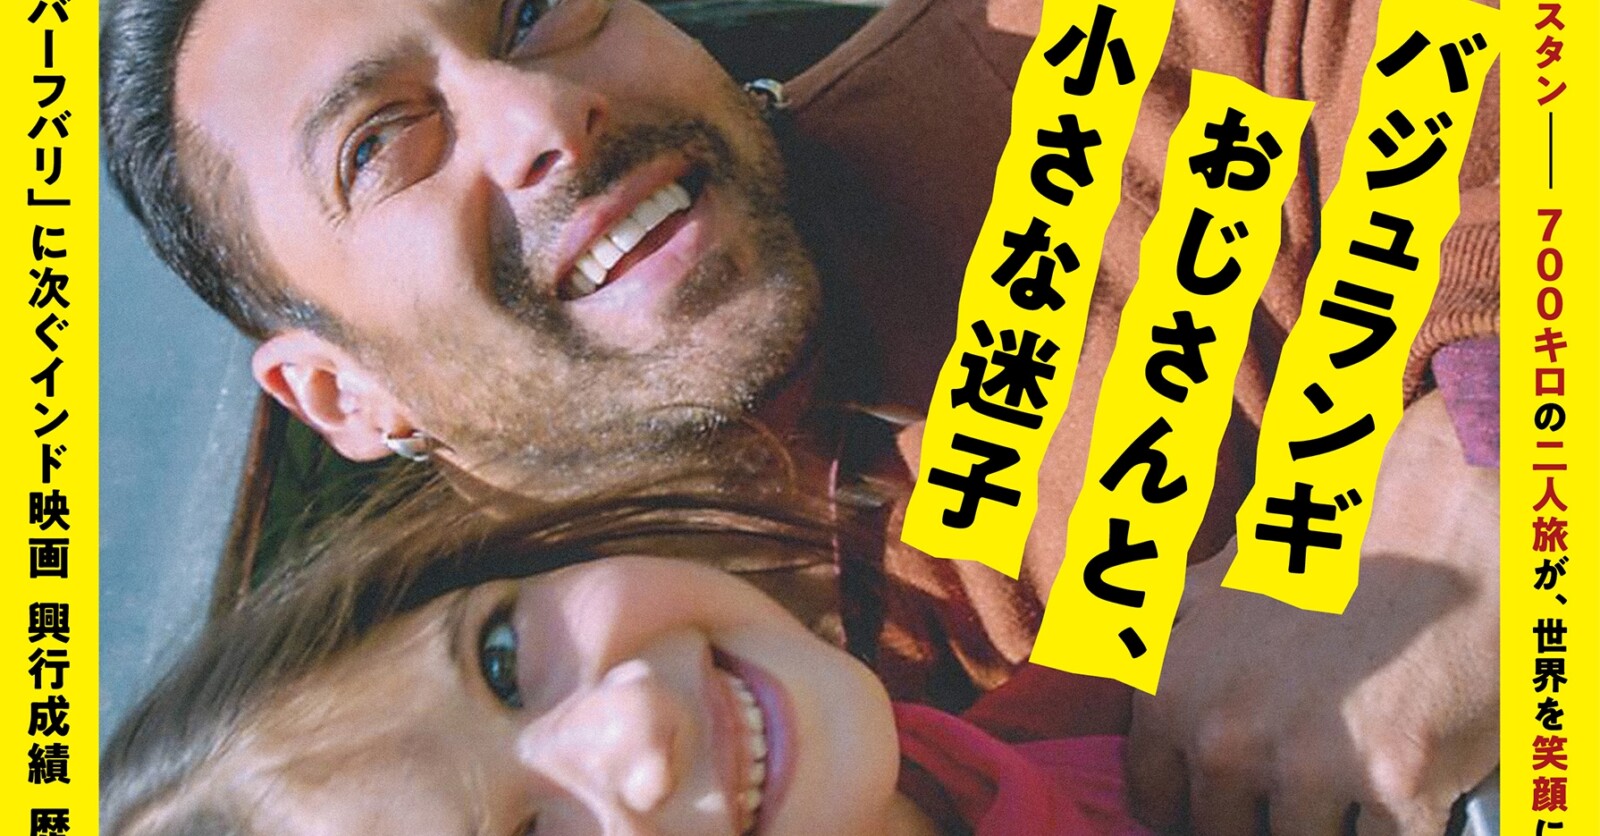 『バジュランギおじさんと、小さな迷子』4月26日より再上映決定 